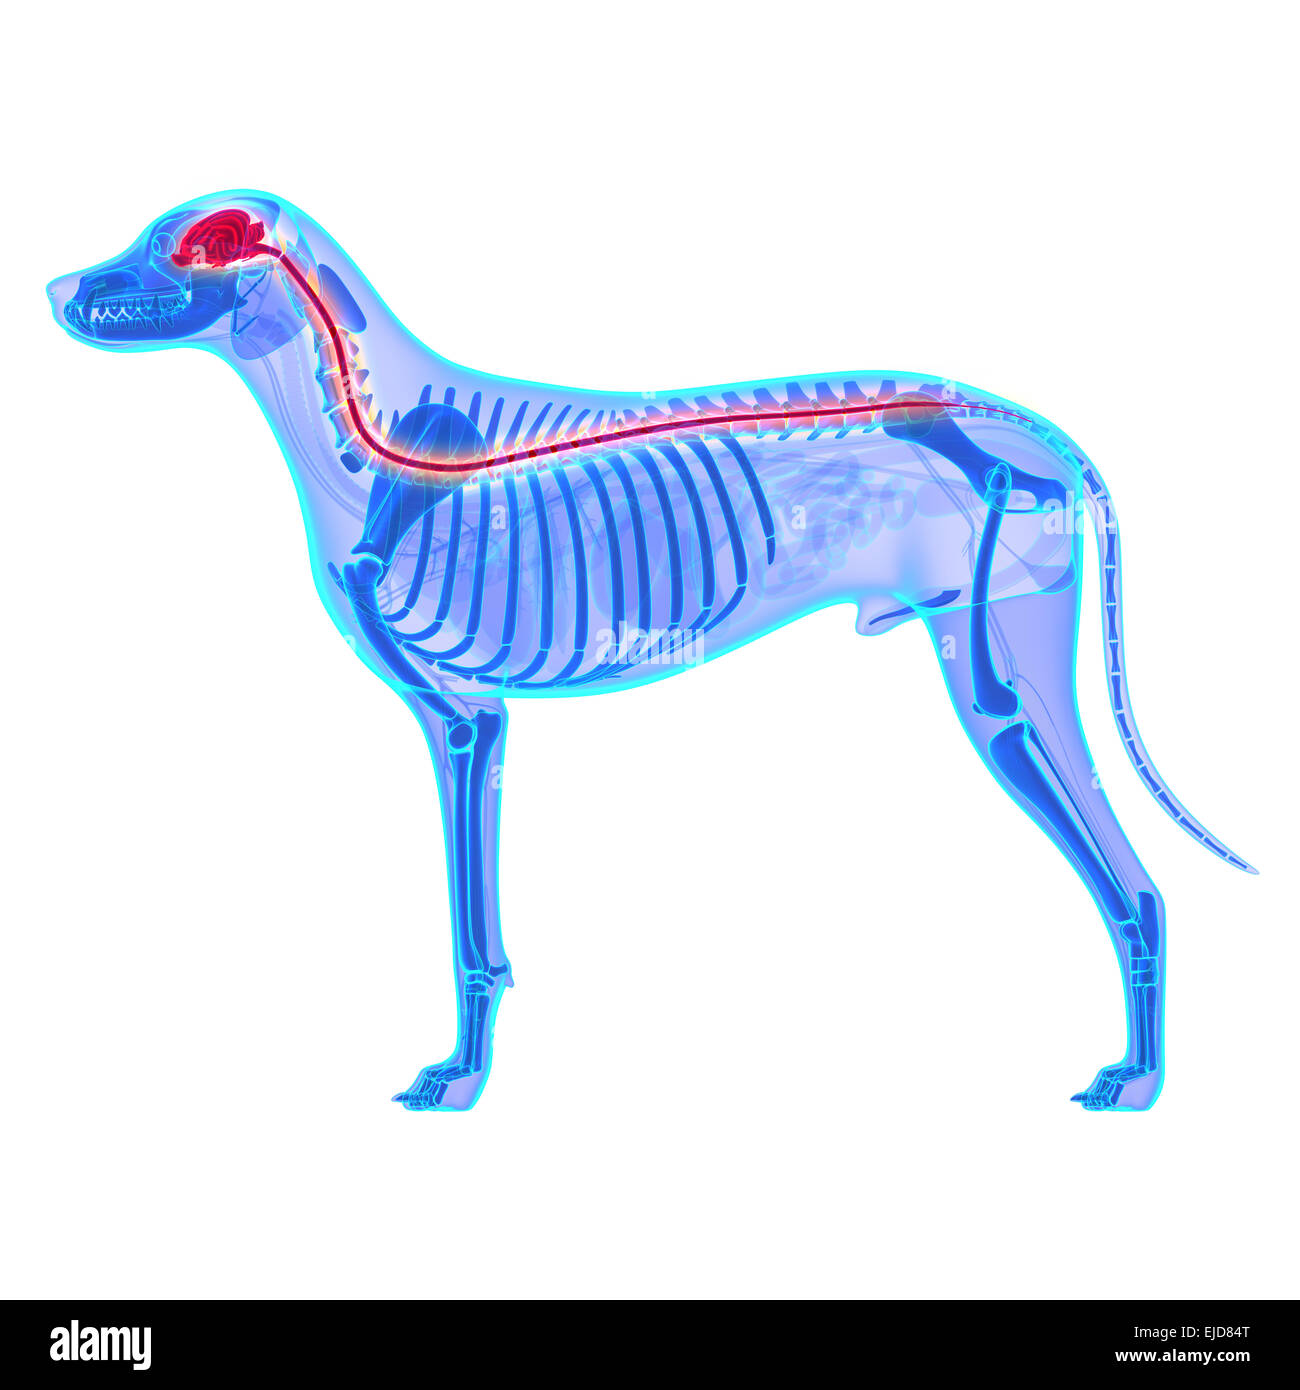 Il cane del sistema nervoso - Canis lupus Familiaris anatomia - isolato su bianco Foto Stock